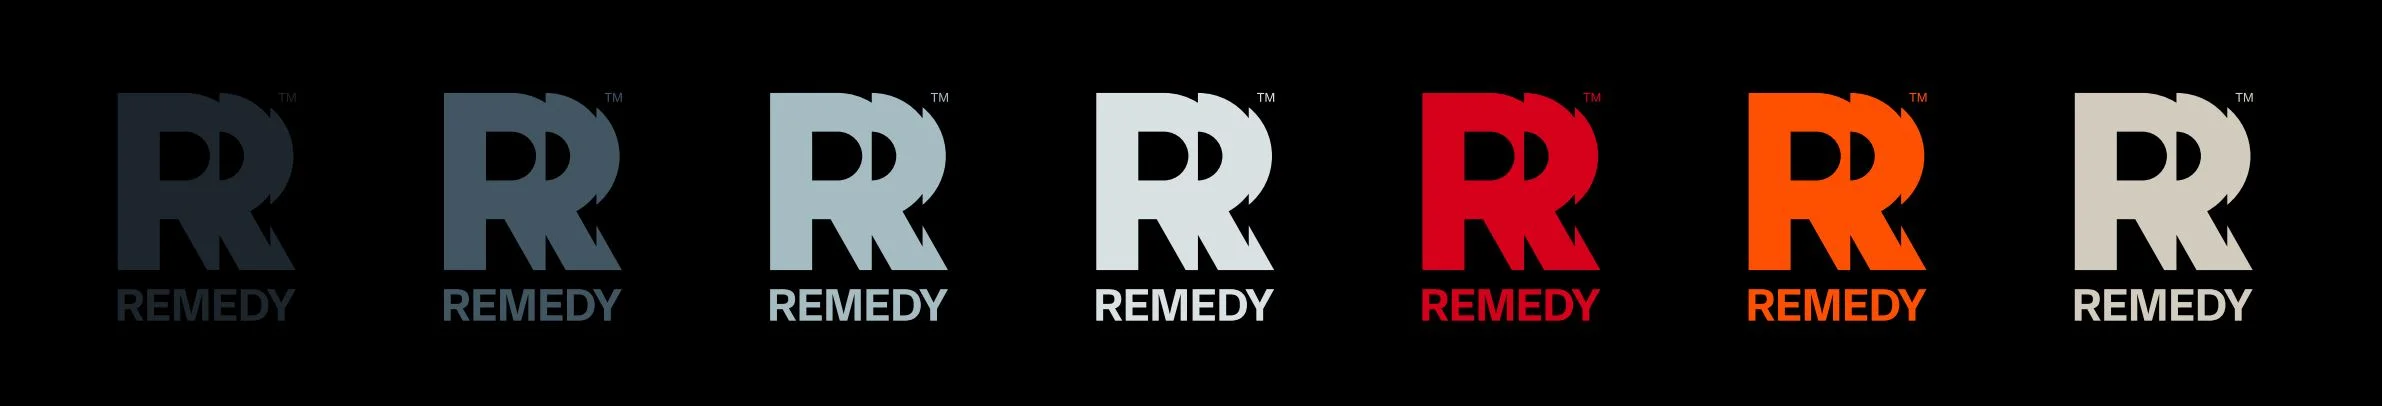 Remedy Entertainment изменила логотип и обещает Alan Wake 2 в этом году - фото 2